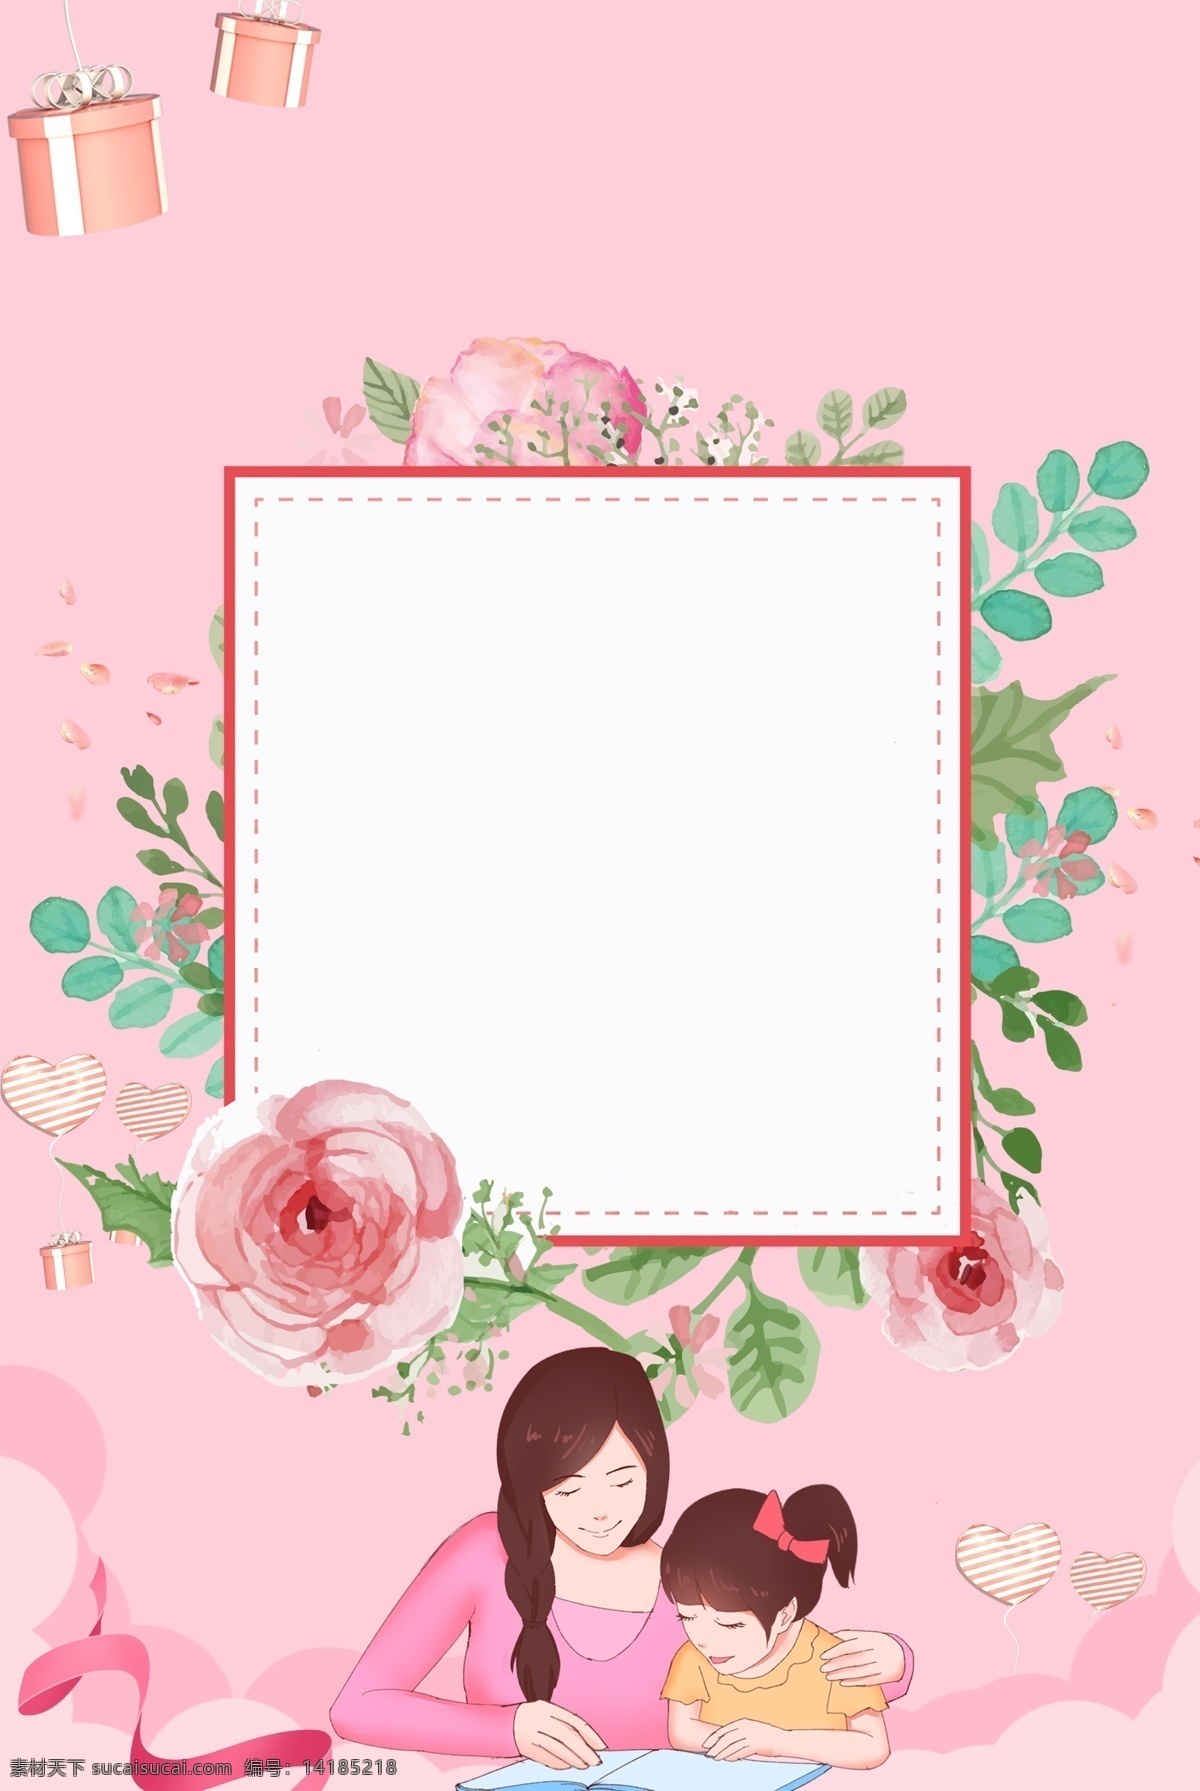 粉色 电商 促销 卡通 母亲节 背景 简约 组合 礼物 温馨 花朵 线条